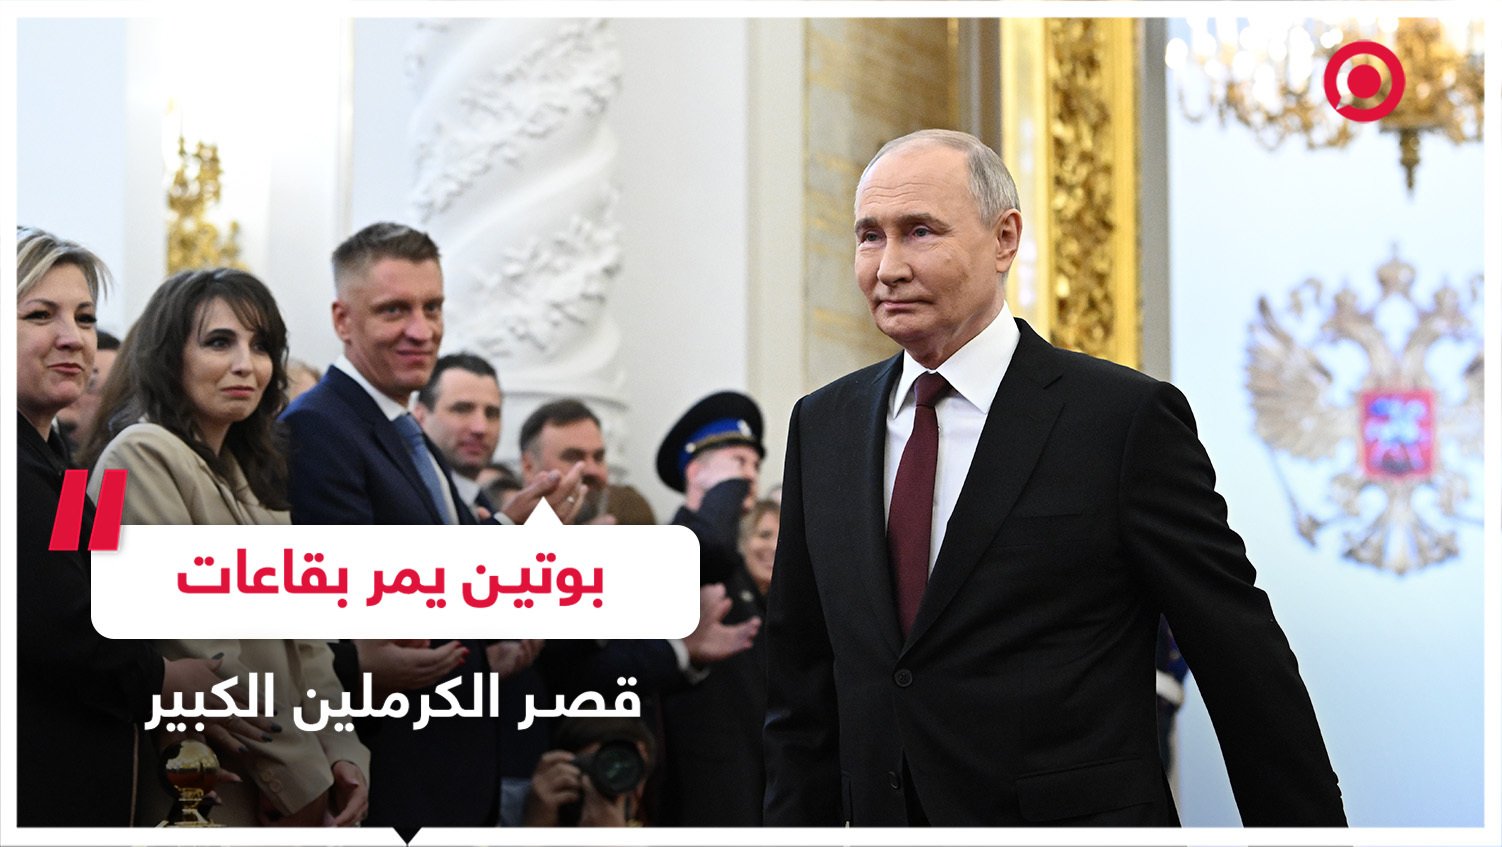 الرئيس الروسي فلادمير بوتين يمر بقاعات قصر الكرملين الكبير لأداء اليمين رئيسا للبلاد